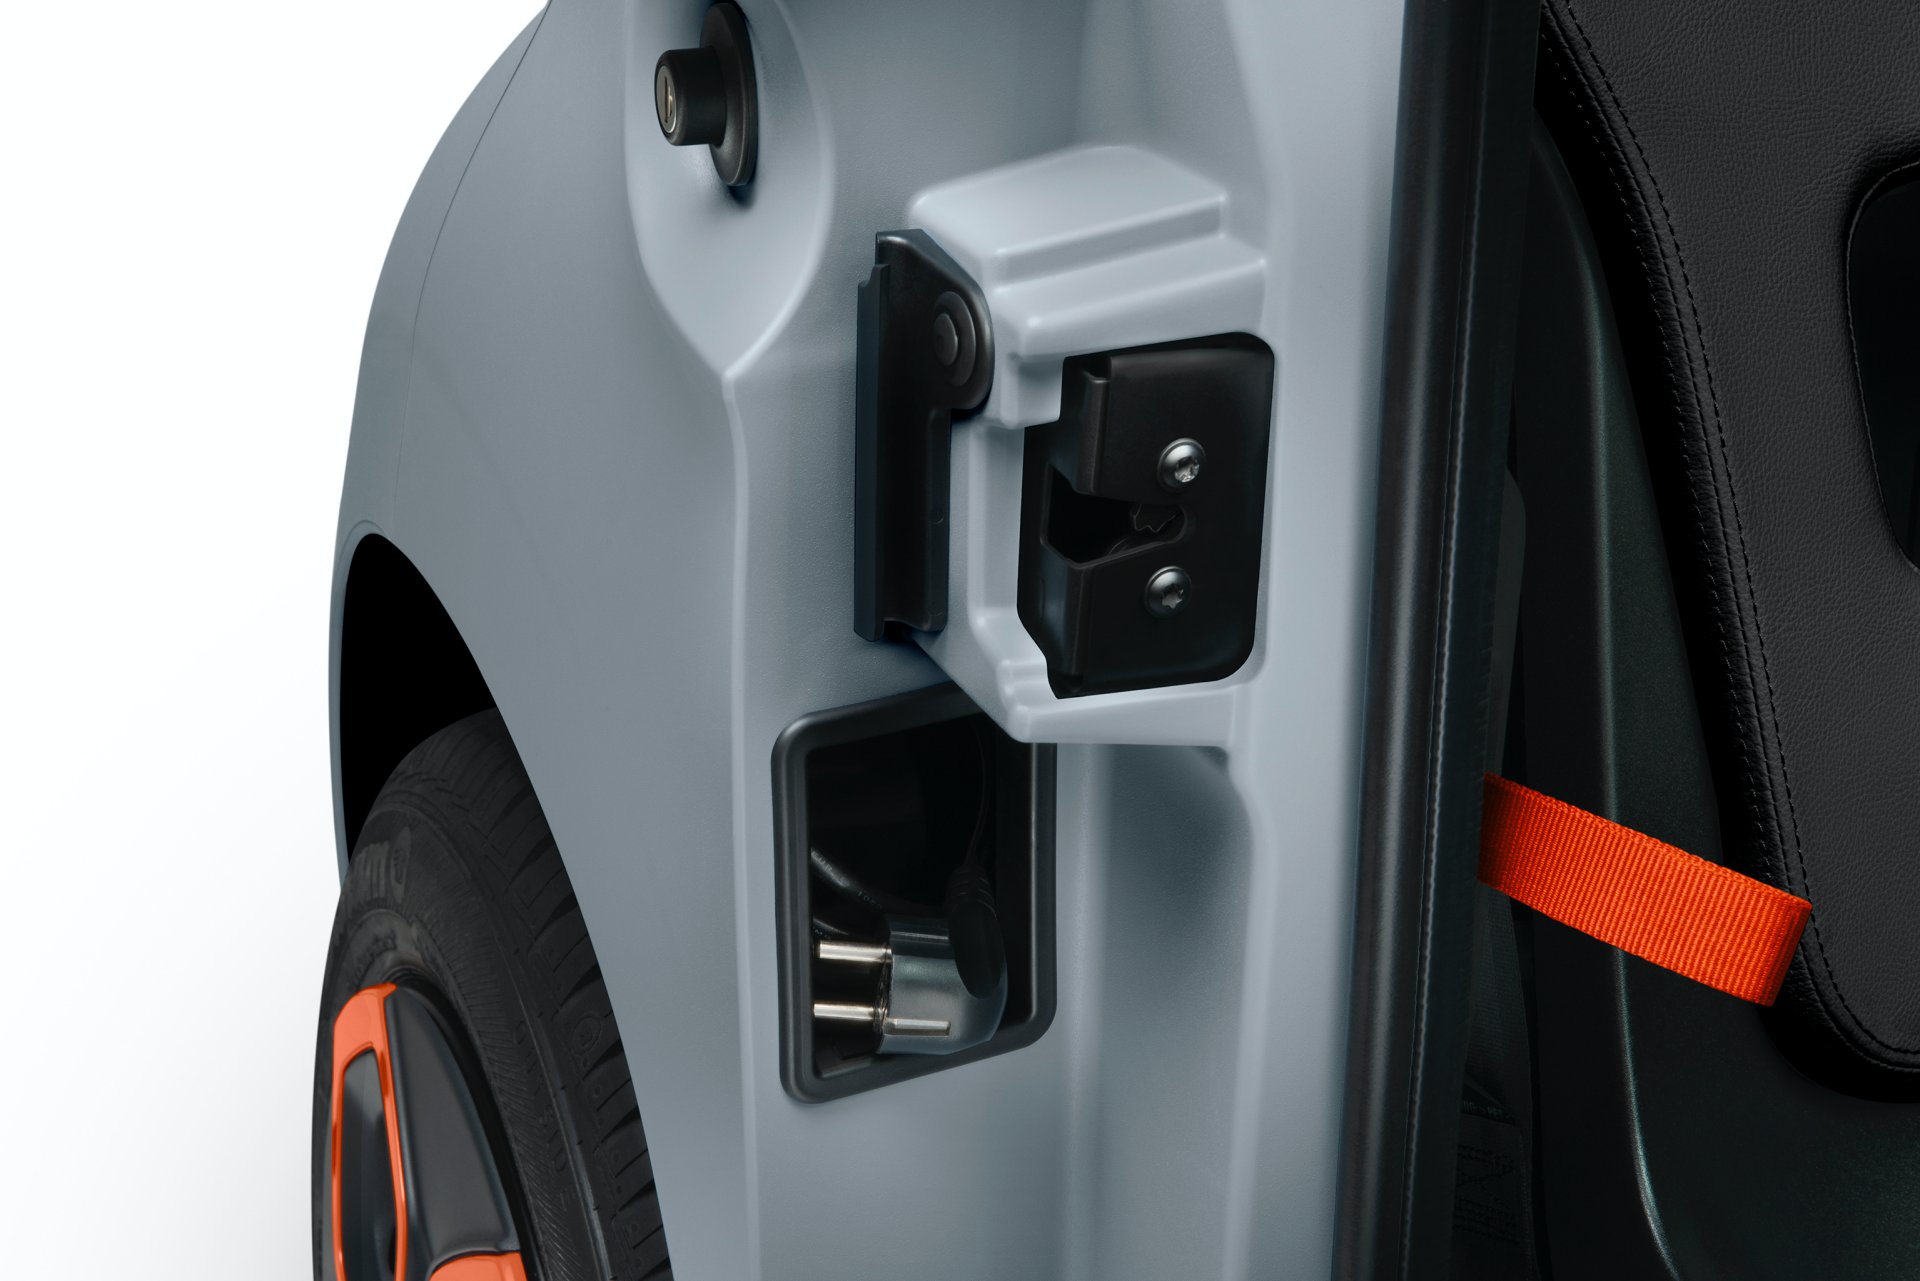 Citroen, aylık 20 euro'ya kiralanabilecek elektrikli aracı Ami'yi tanıttı